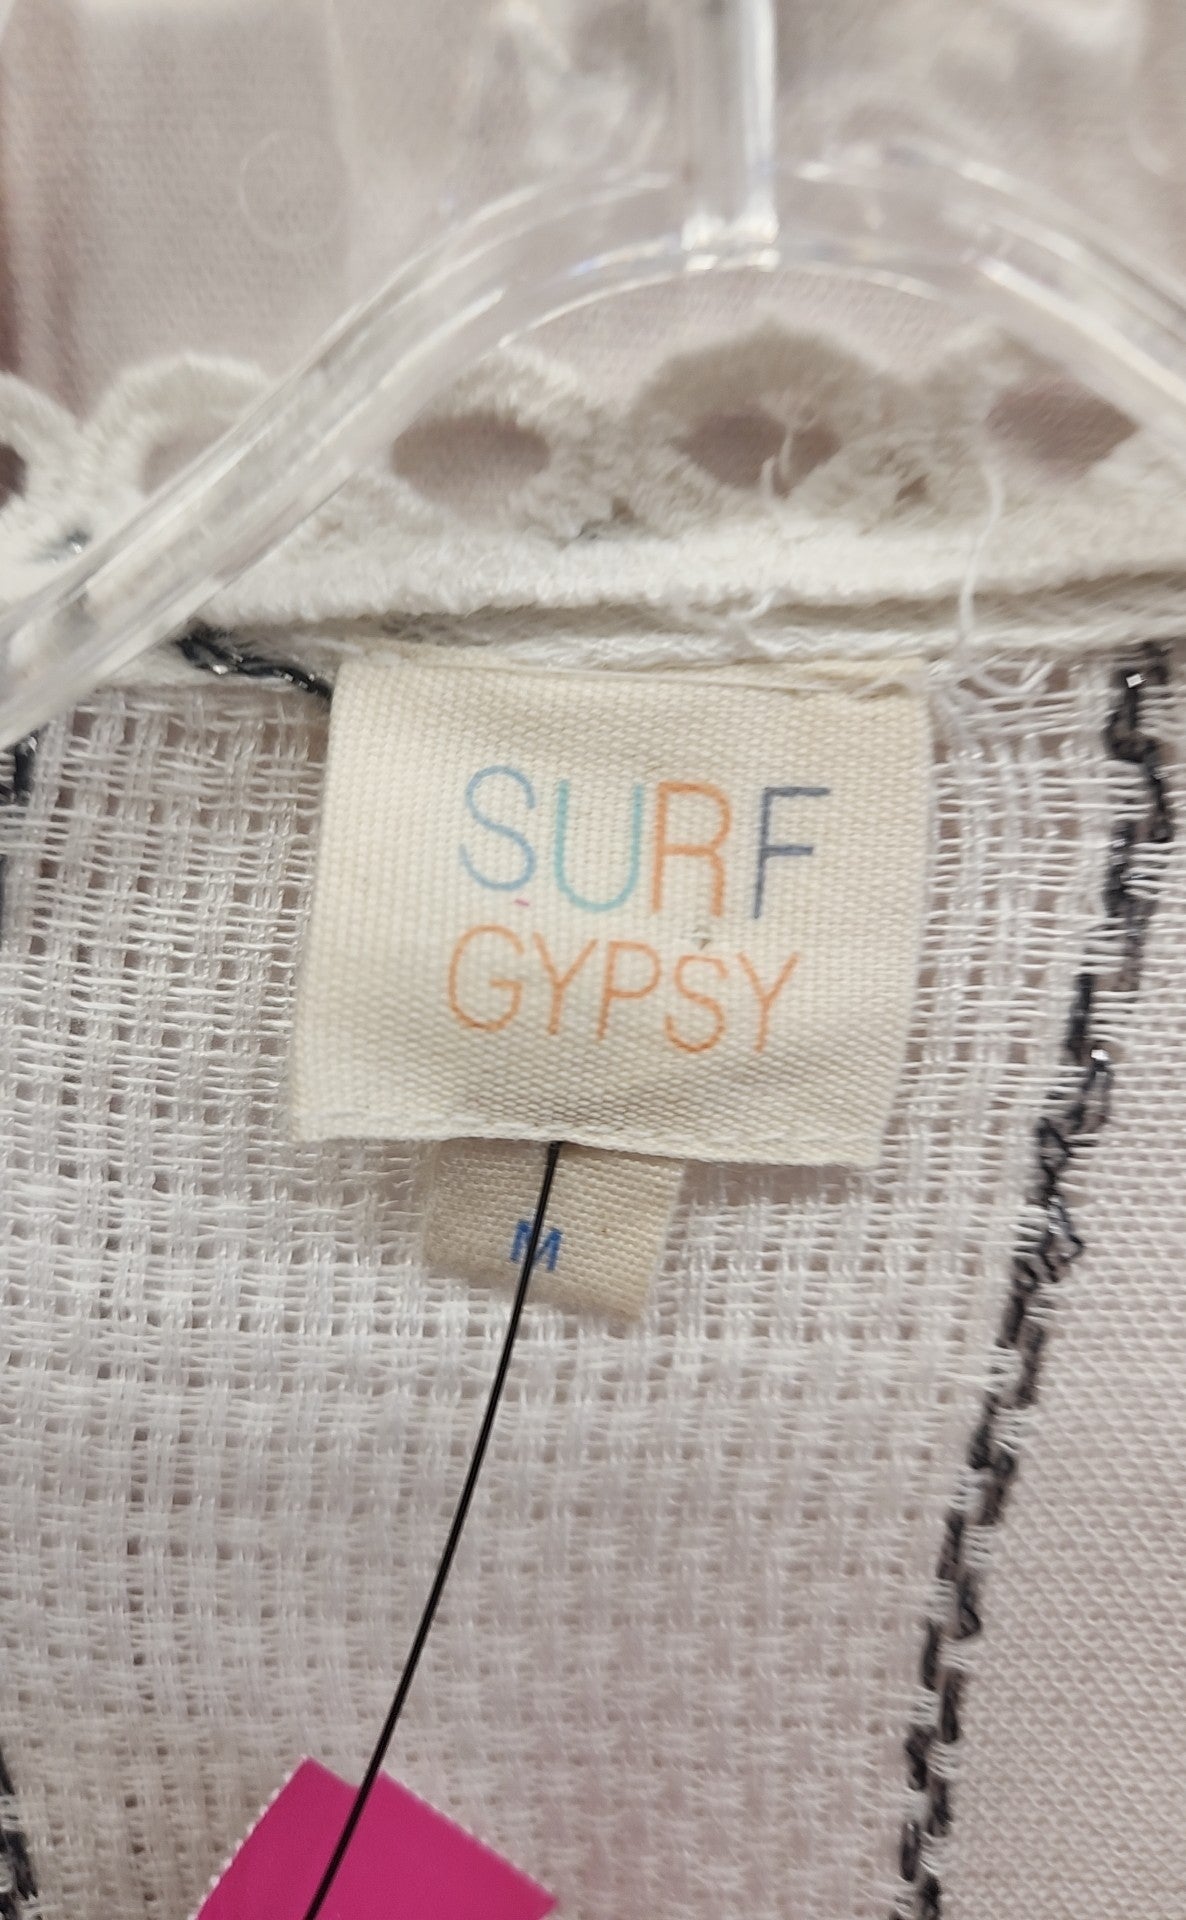 Surf Gypspy Women's Size M White Cardigan